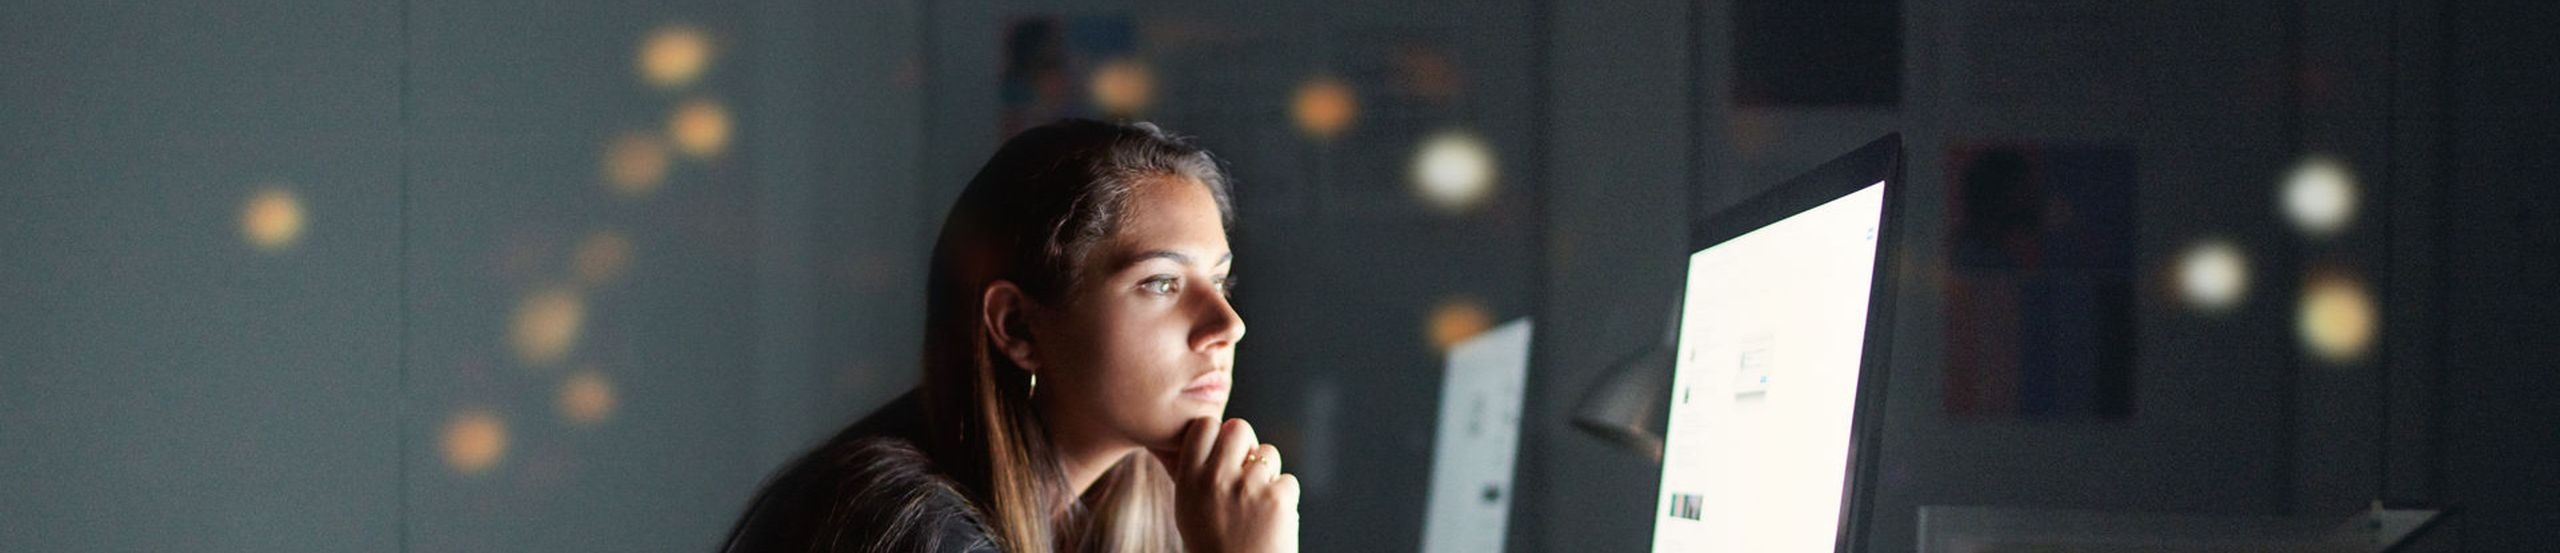 Junge Frau sitzt in dunklem Raum vor hellem PC-Bildschirm